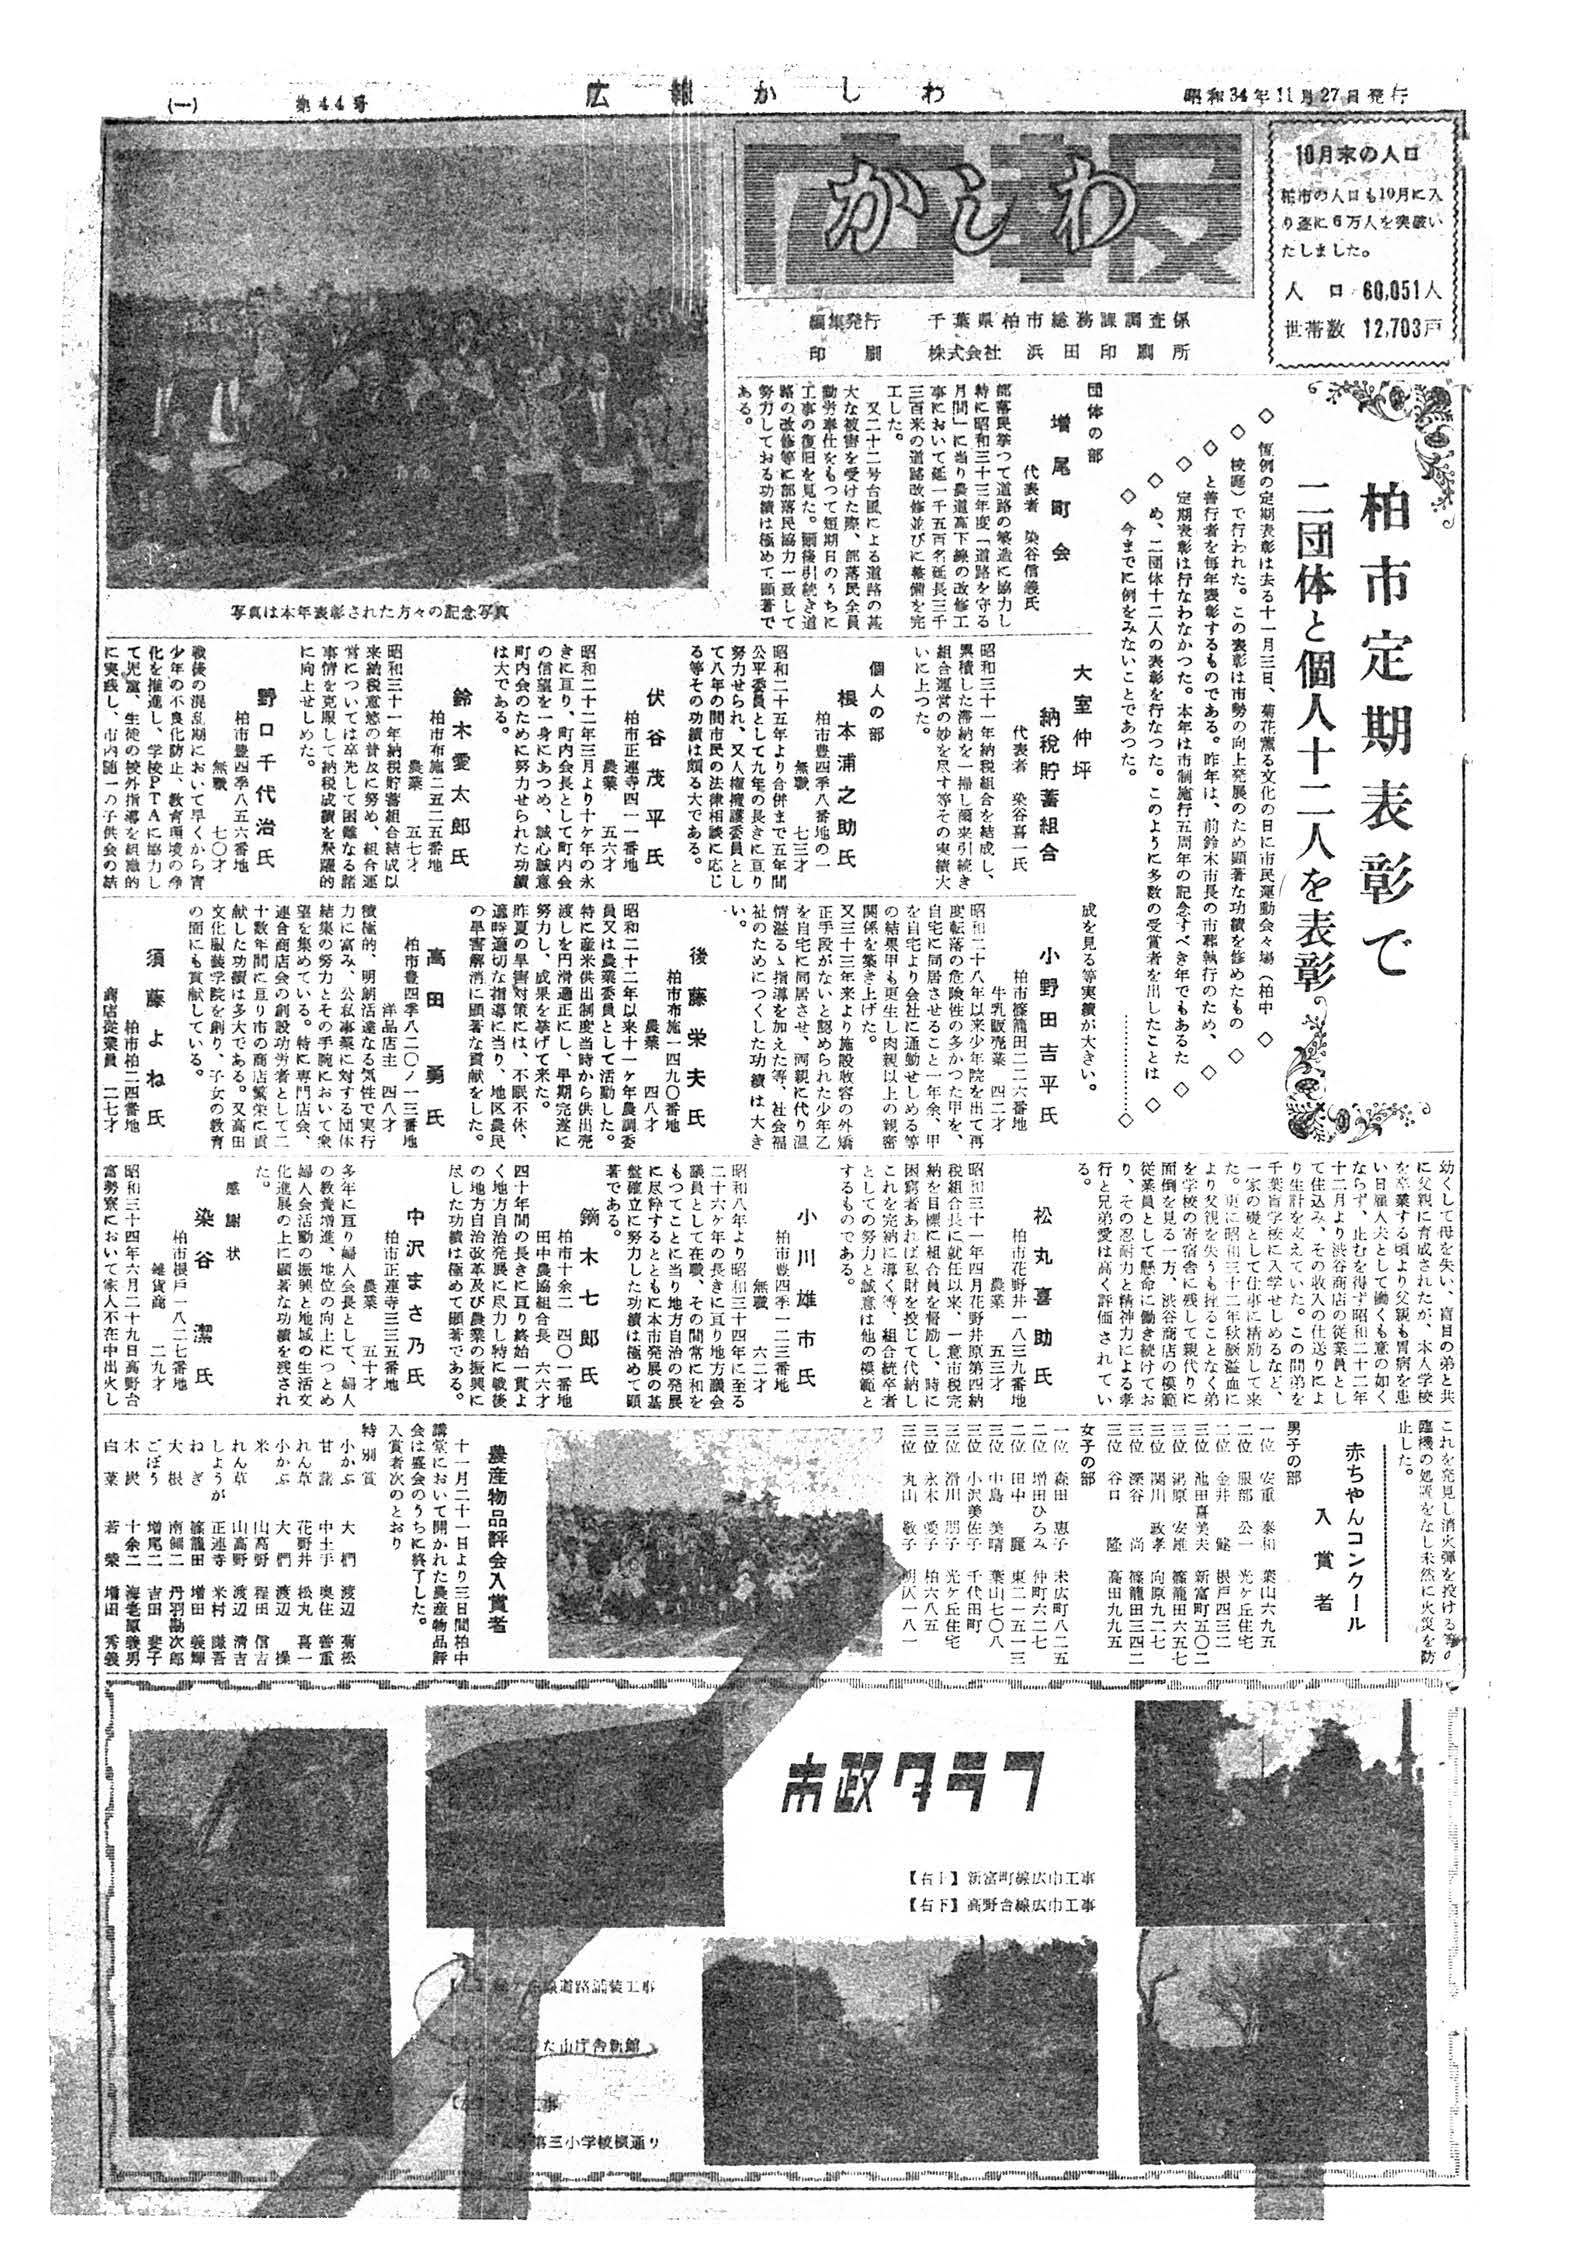 広報かしわ　昭和34年11月27日発行　44号